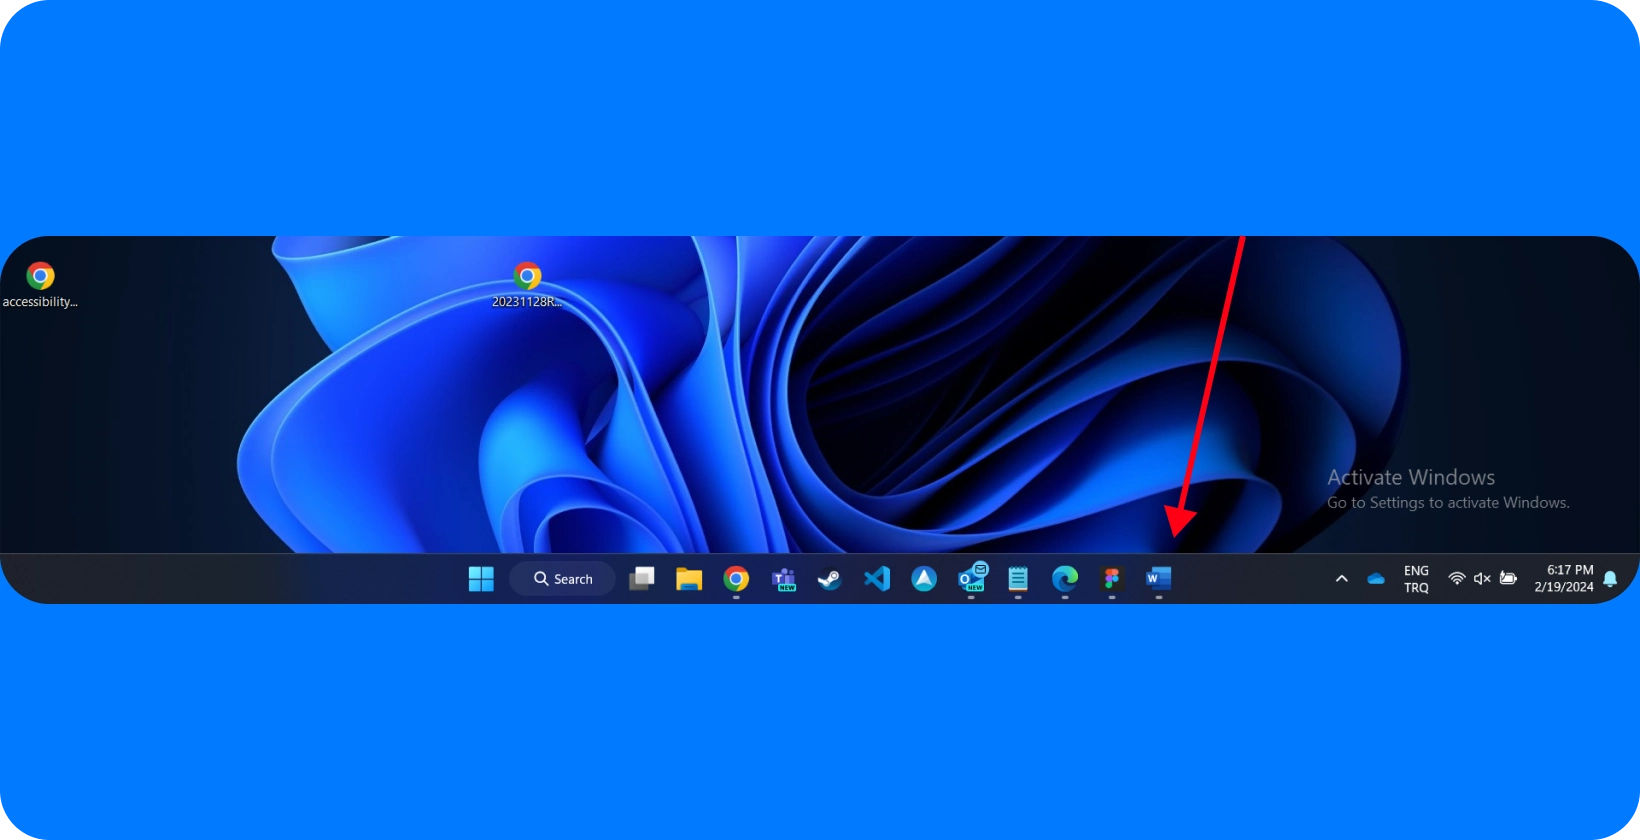 Desktop-Bildschirm mit Windows Benutzeroberfläche und hervorgehobenem Microsoft Word-Symbol, was auf einen Fokus auf Diktierfunktionen hinweist.